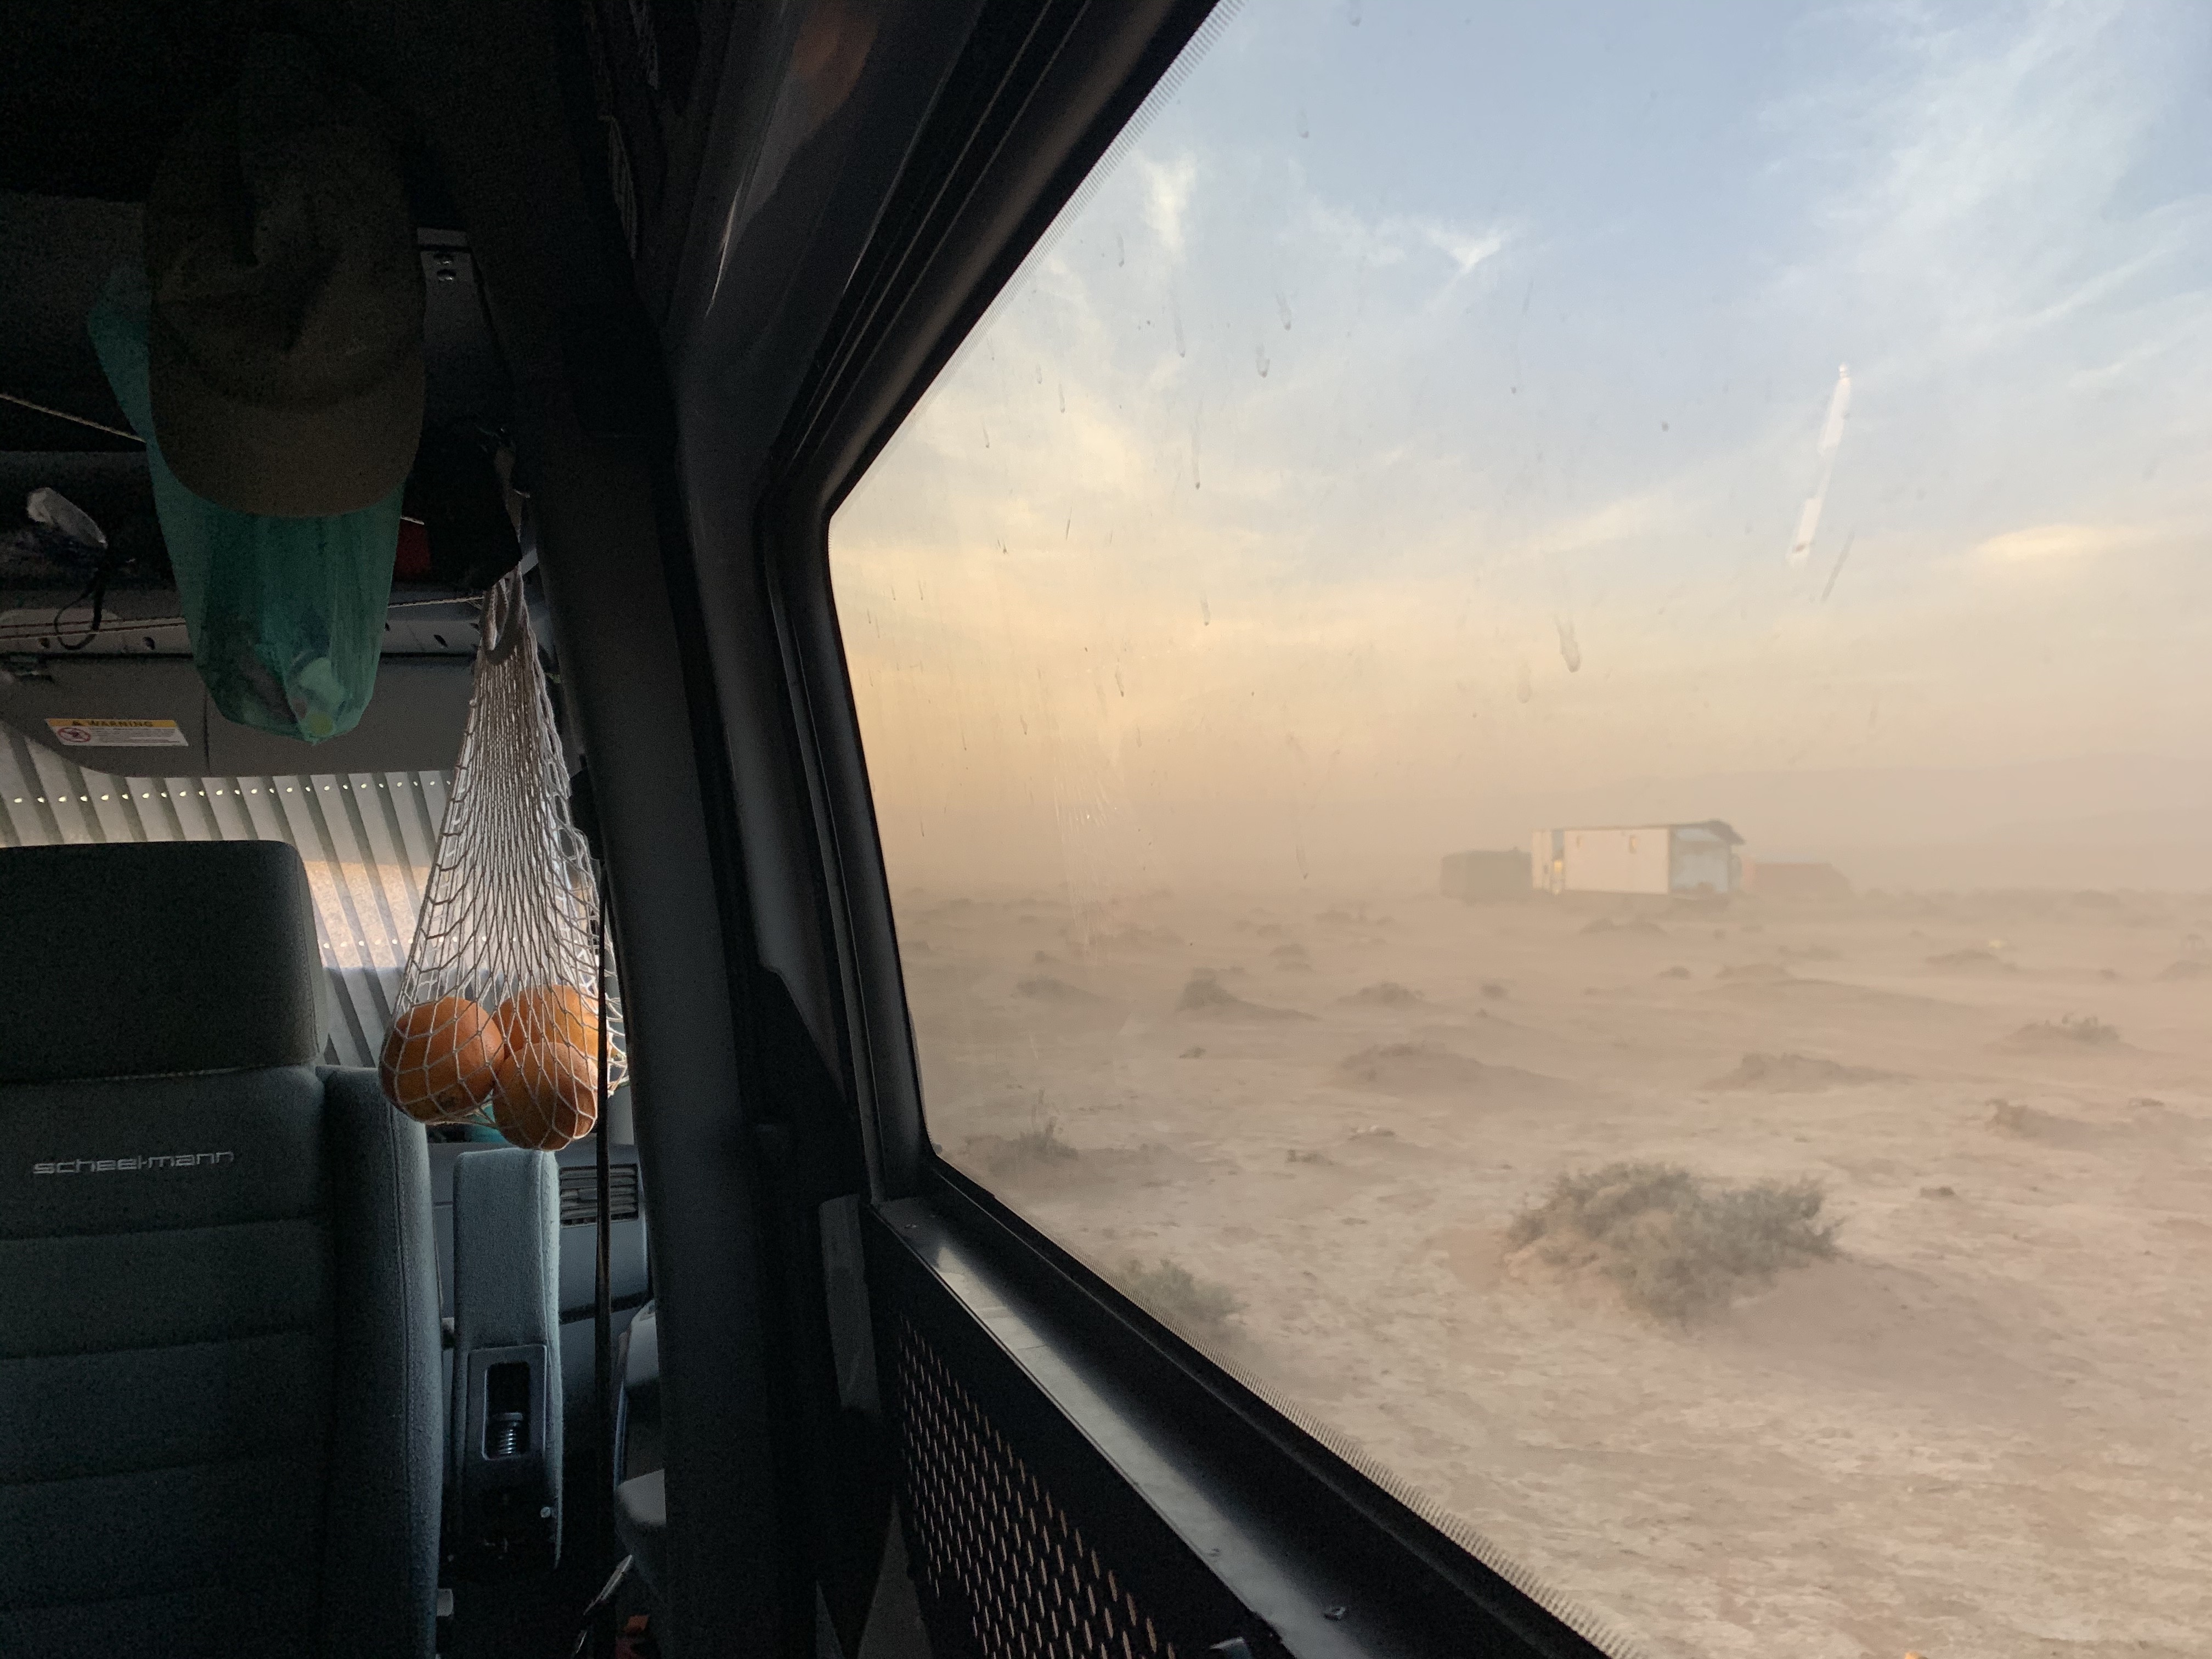 Dust storm van window